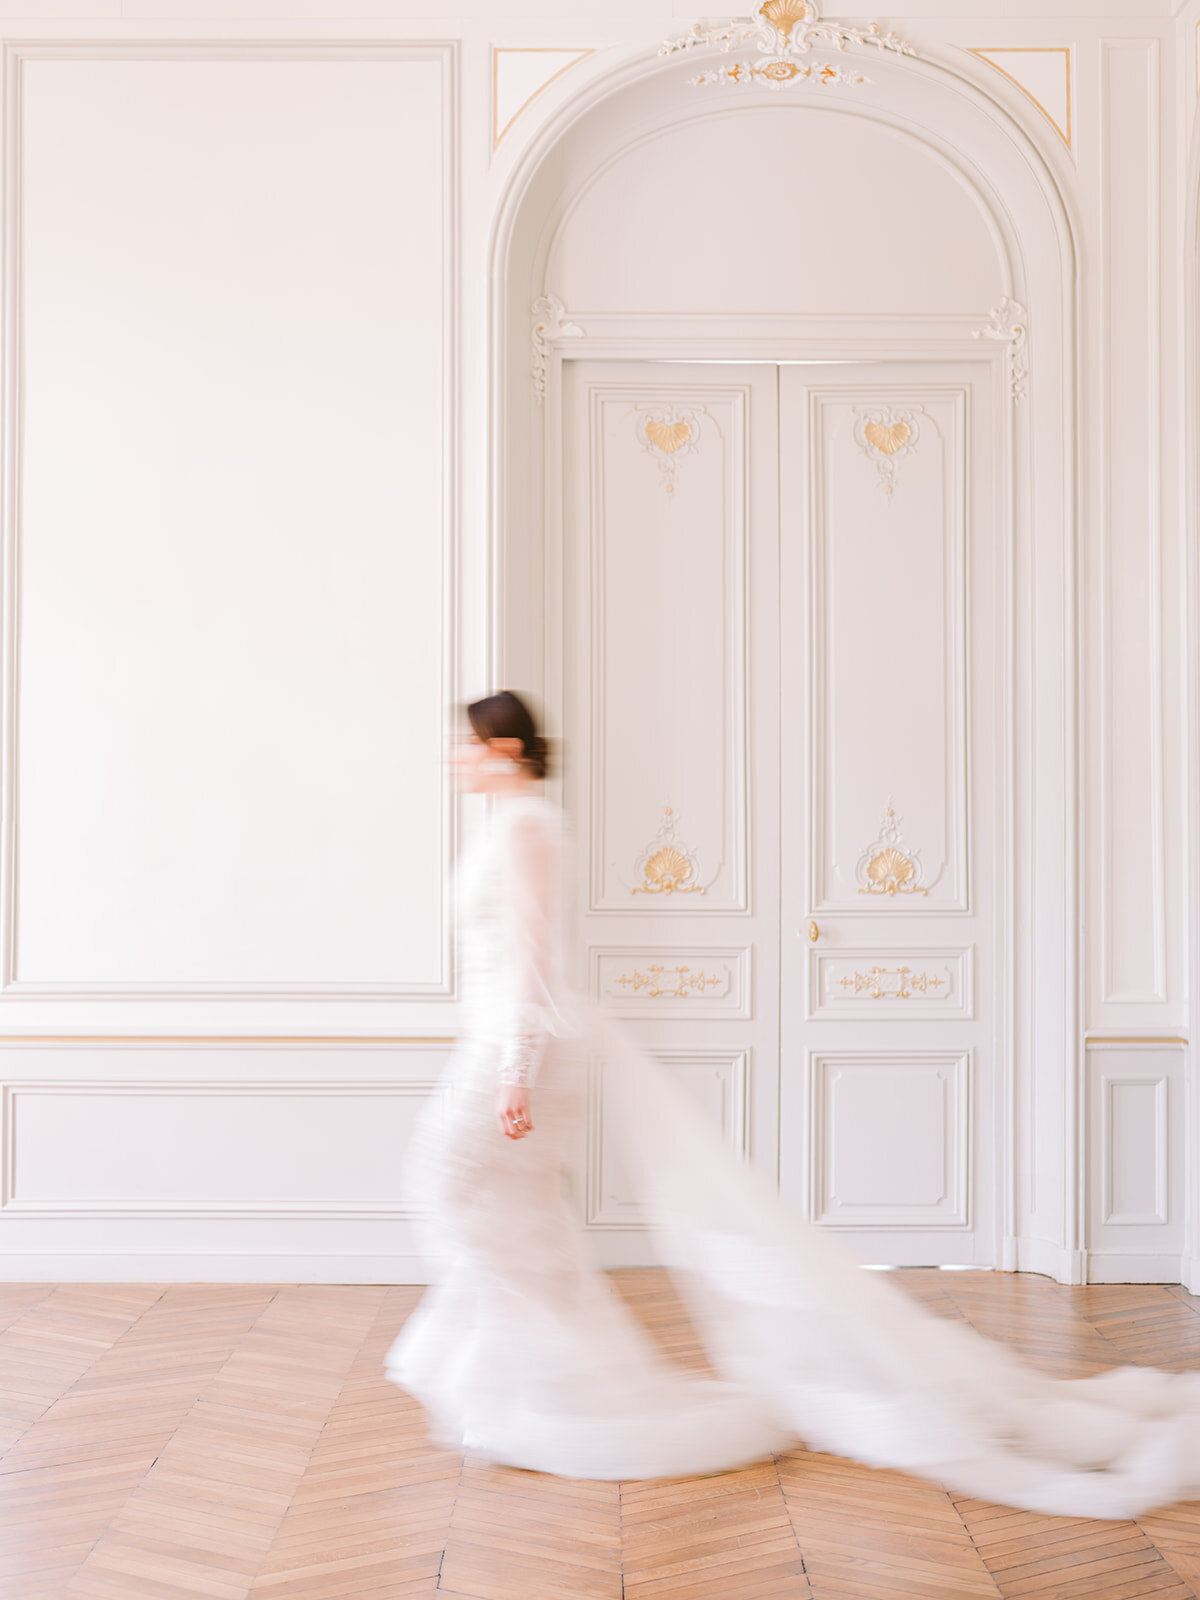 cesarempiaze-photographer-paris-wedding-chateau-_-107